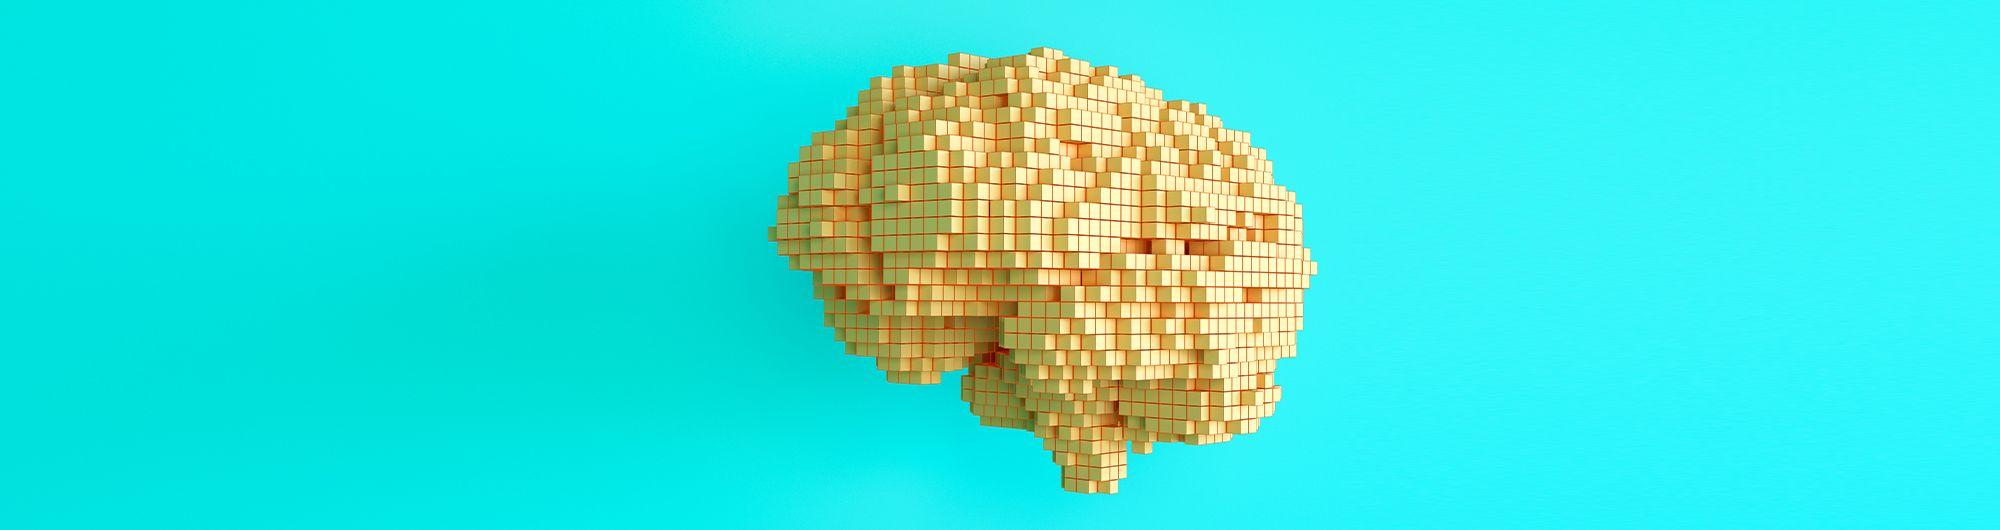 representação de cérebro em forma pixelada 3d sobre fundo azul